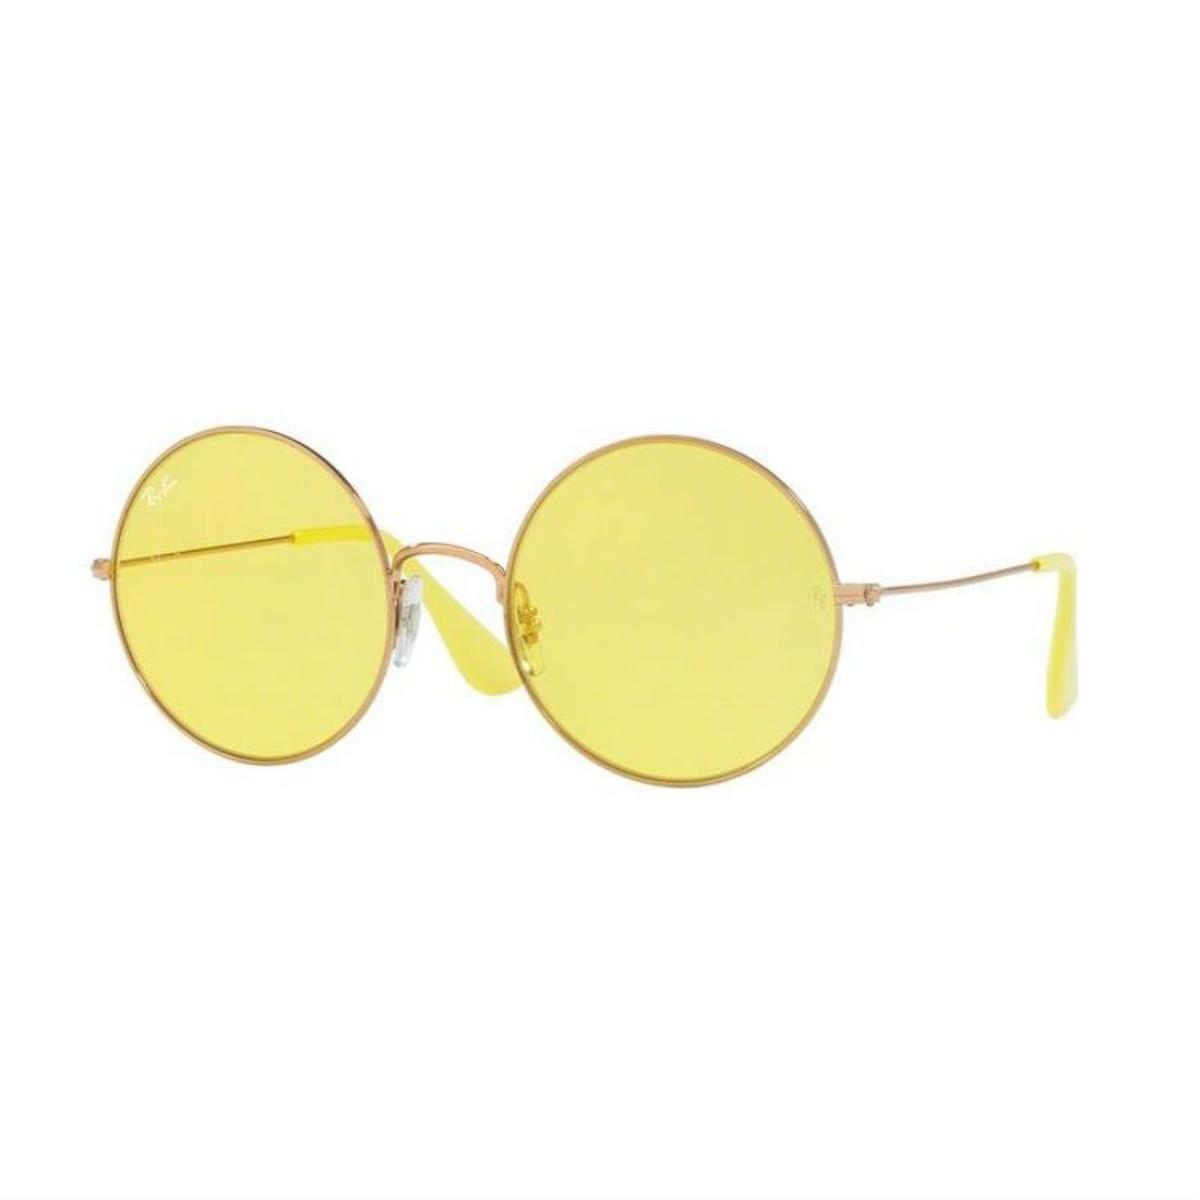 Prendas y complementos en amarillo: gafas de Ray ban